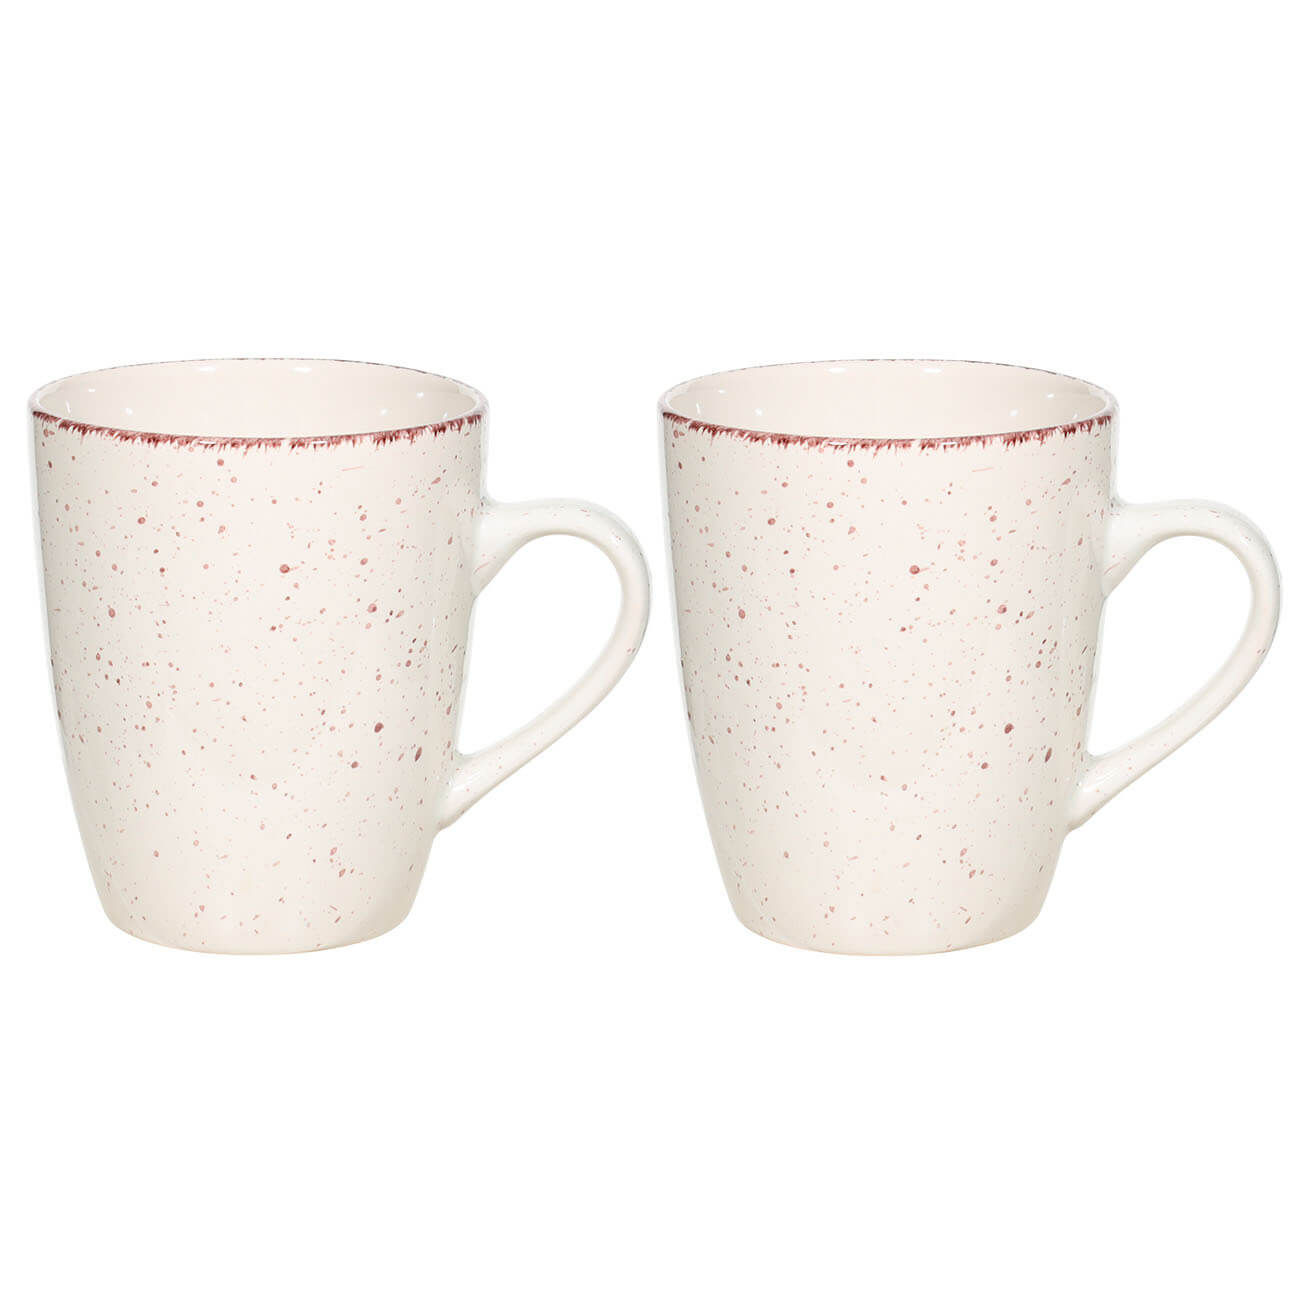 Mug, 400 ml, 2 pcs, ceramic, beige, speckled, Speckled изображение № 1